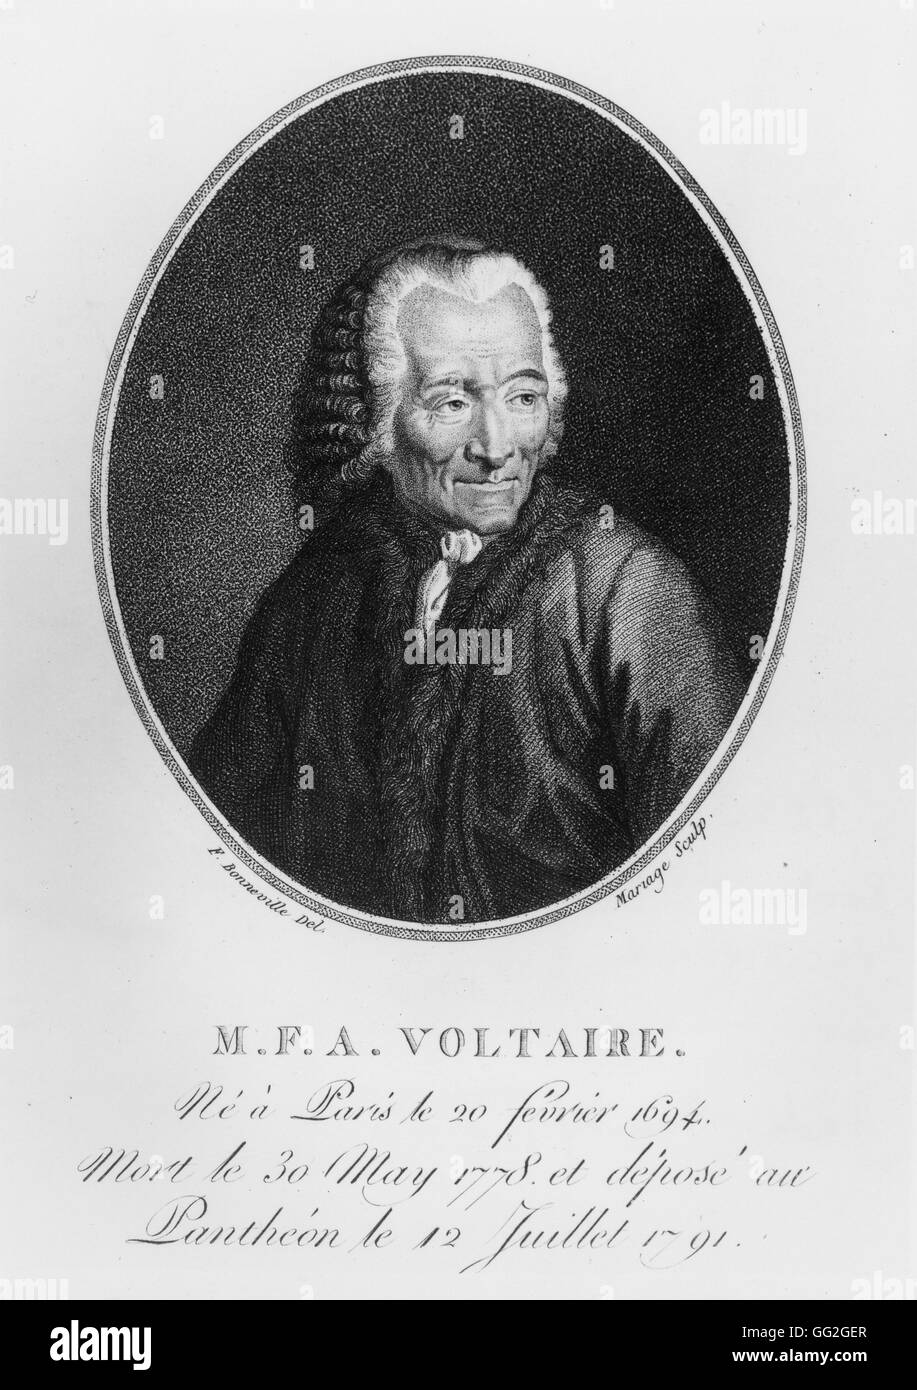 Voltaire (Francois Marie Arouet) in seinem Alter. Französischer Autor und Philosoph. Kupferstich aus dem 19. Jahrhundert. Stockfoto